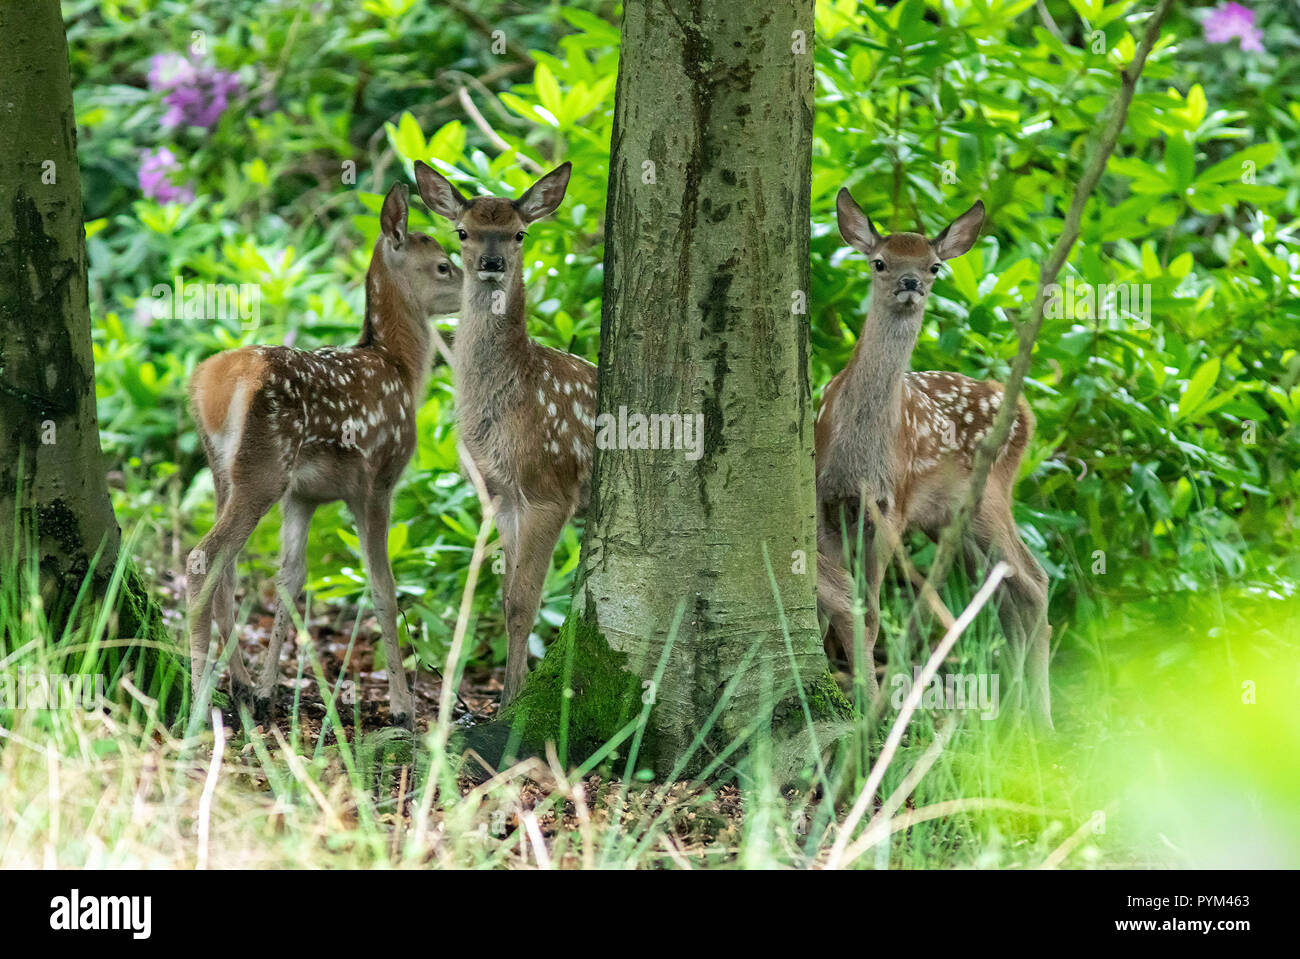 Baby cervi (1-3 giorni) Godetevi i loro primi passi nel parco di Richmond Park come operai in guardia contro i visitatori avvicinarsi troppo al cervo durante il parto Foto Stock